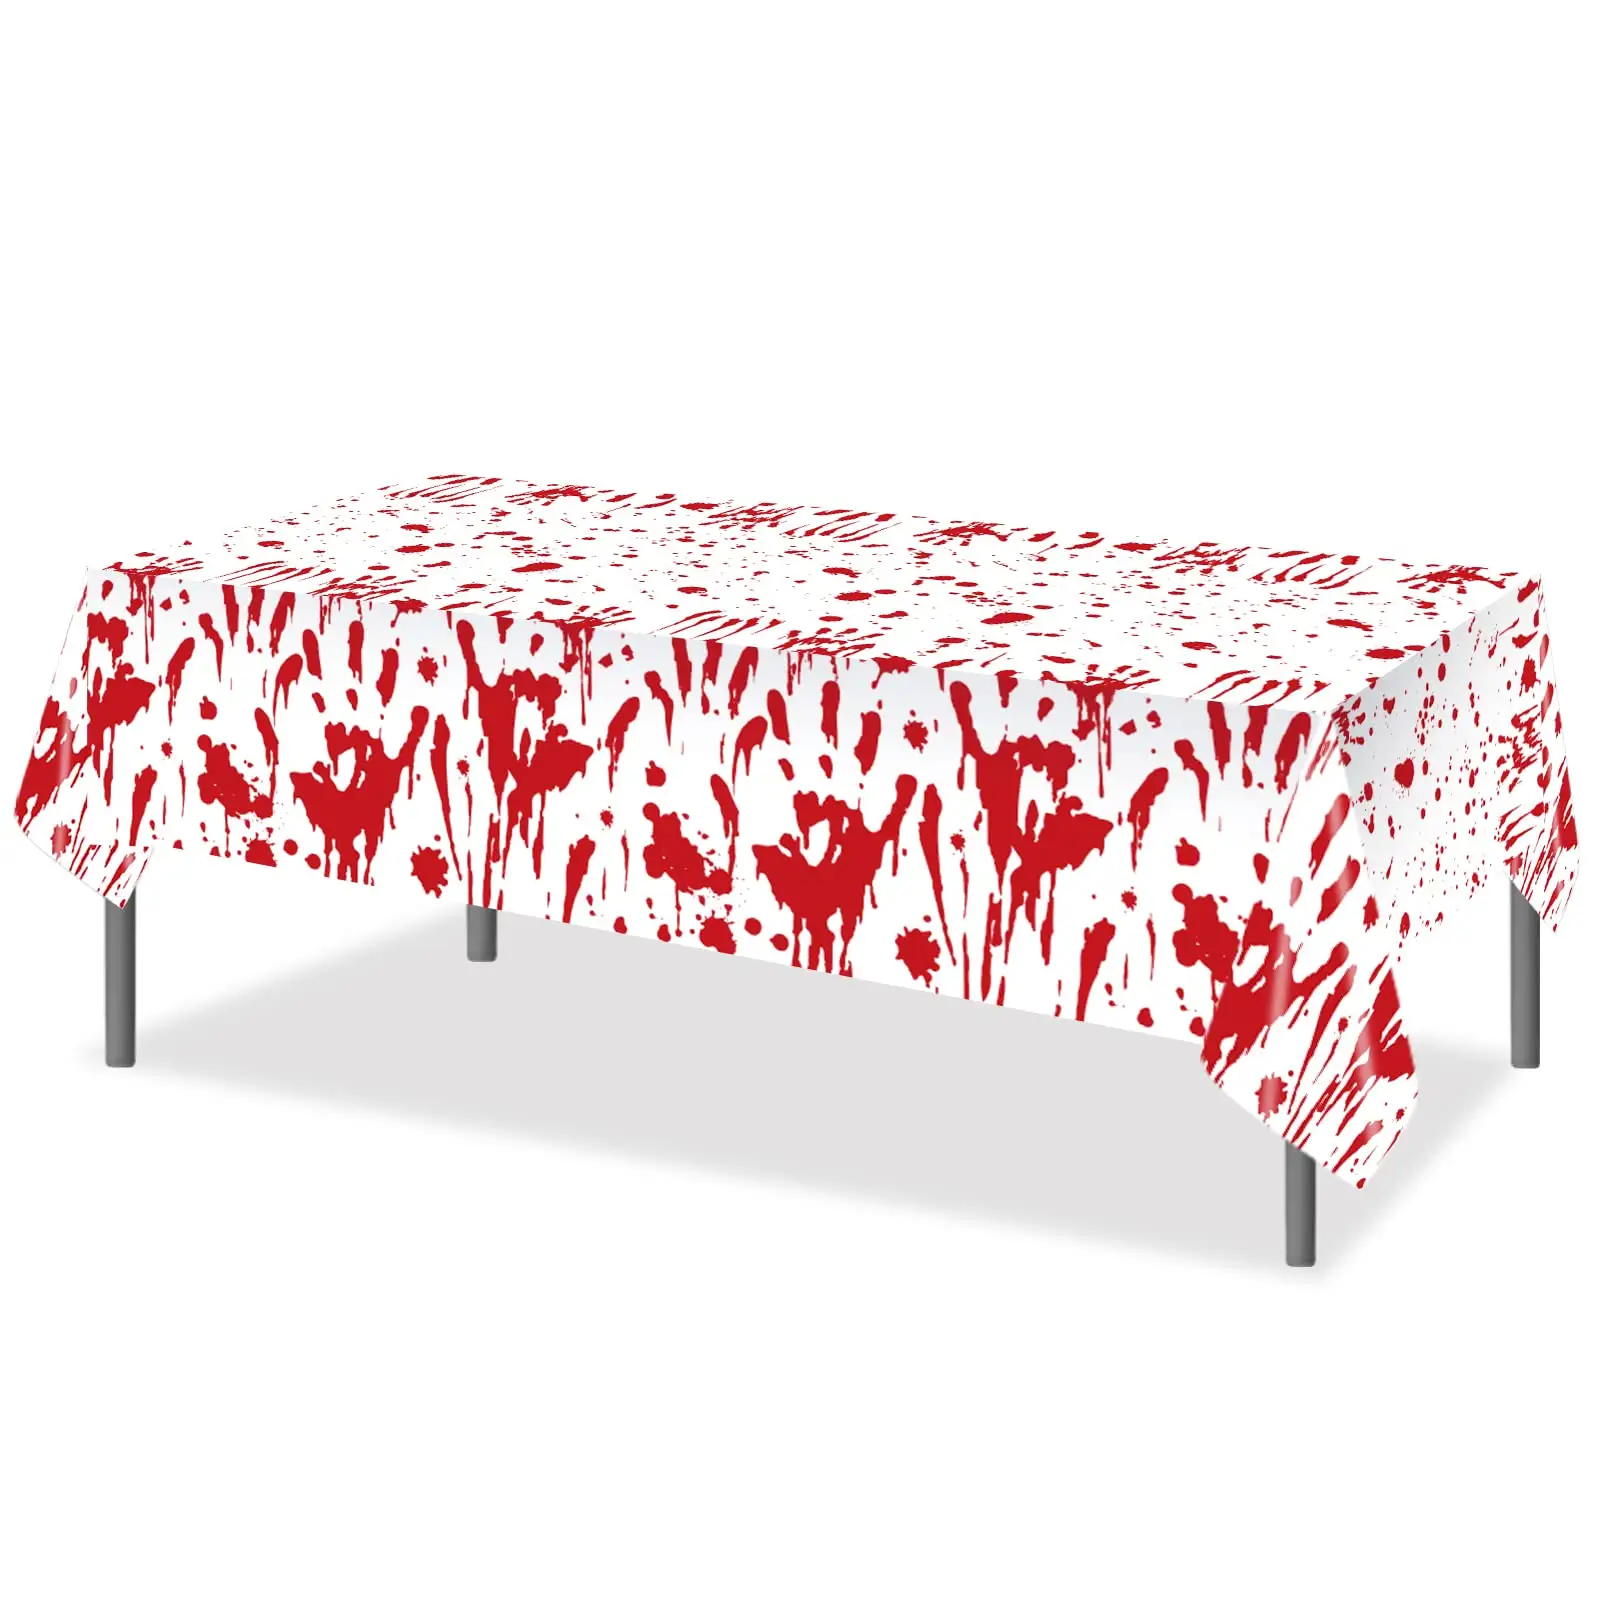 مفرش طاولة مخصص منقوش بالدم ويمكن التخلص منه مقاوم للماء أغطية طاولات بلاستيكية لحفلات الهالوين والحفلات ذات الرسومات المرعبة